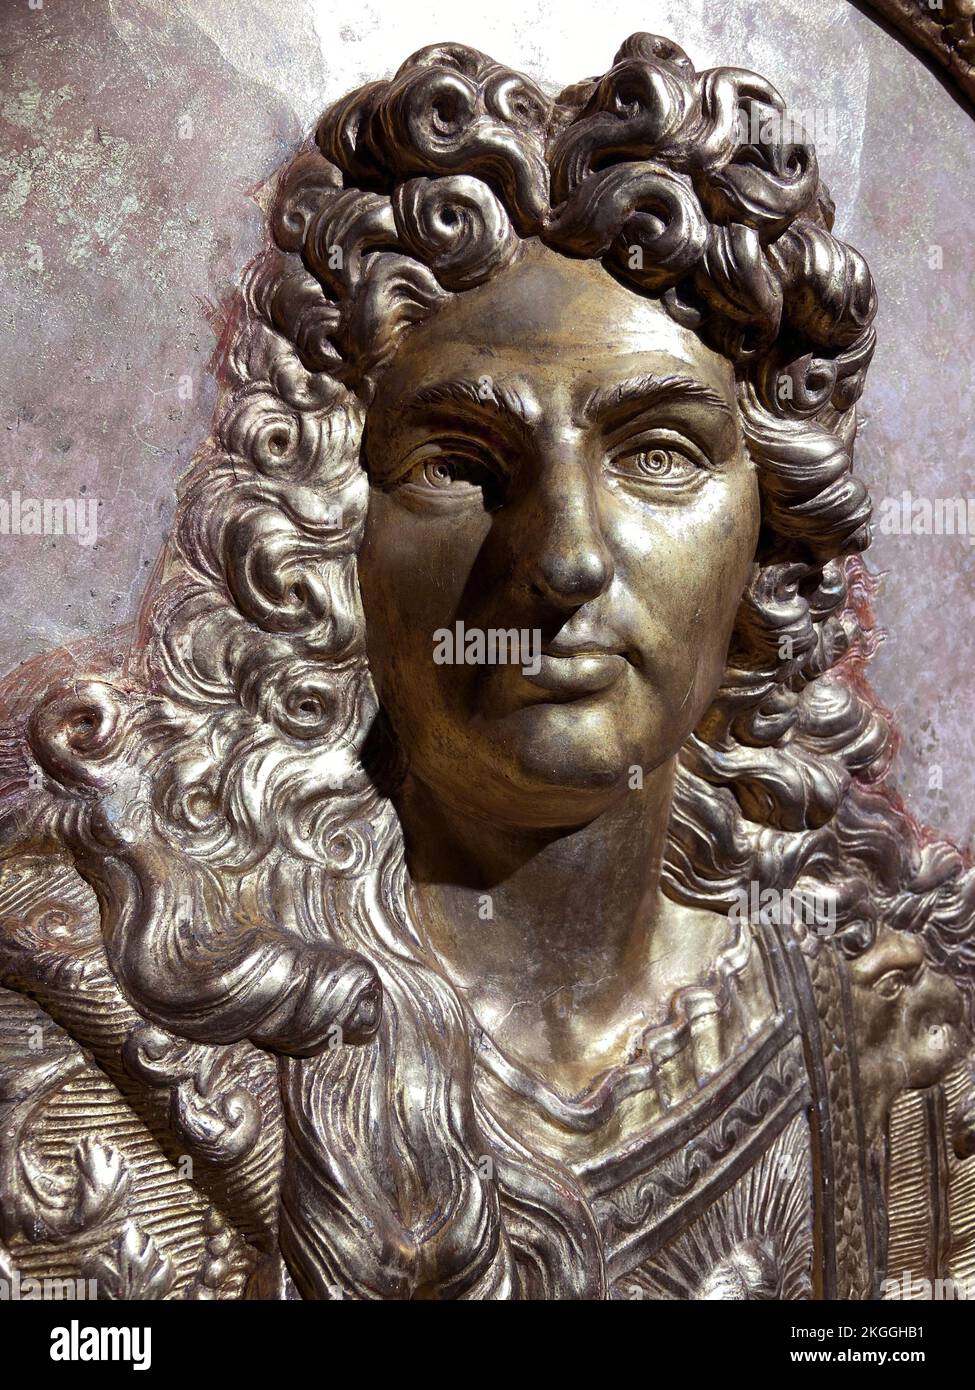 Buste en relief du Roi de France Louis XIV - platre moulé, doré. 17eme siecle. Musée d’Art et d’Histoirede Lisieux Stock Photo